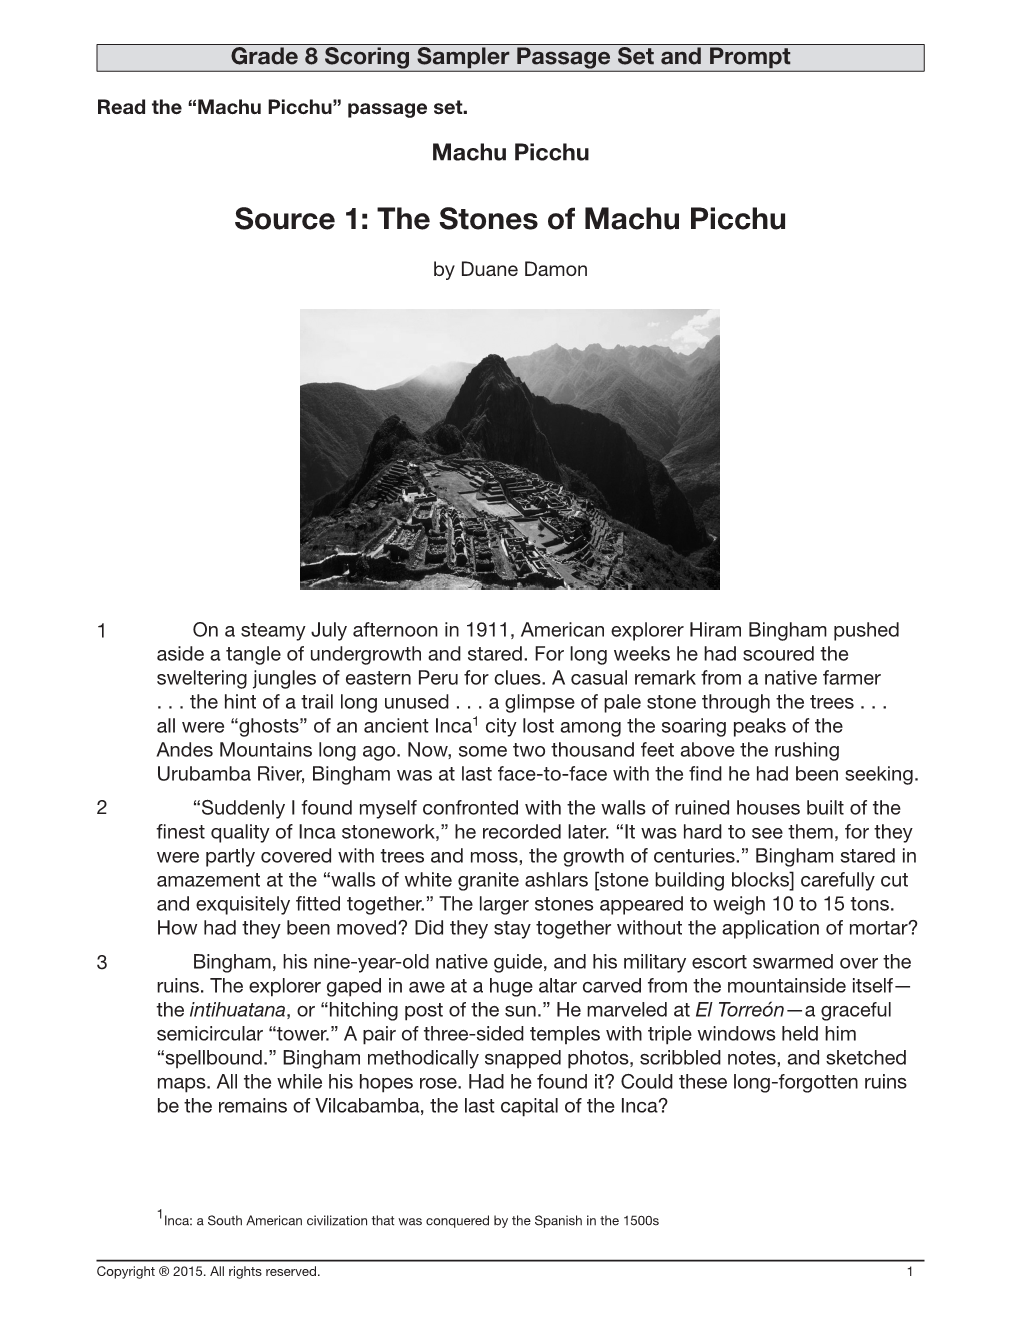 Grade 8: Machu Picchu